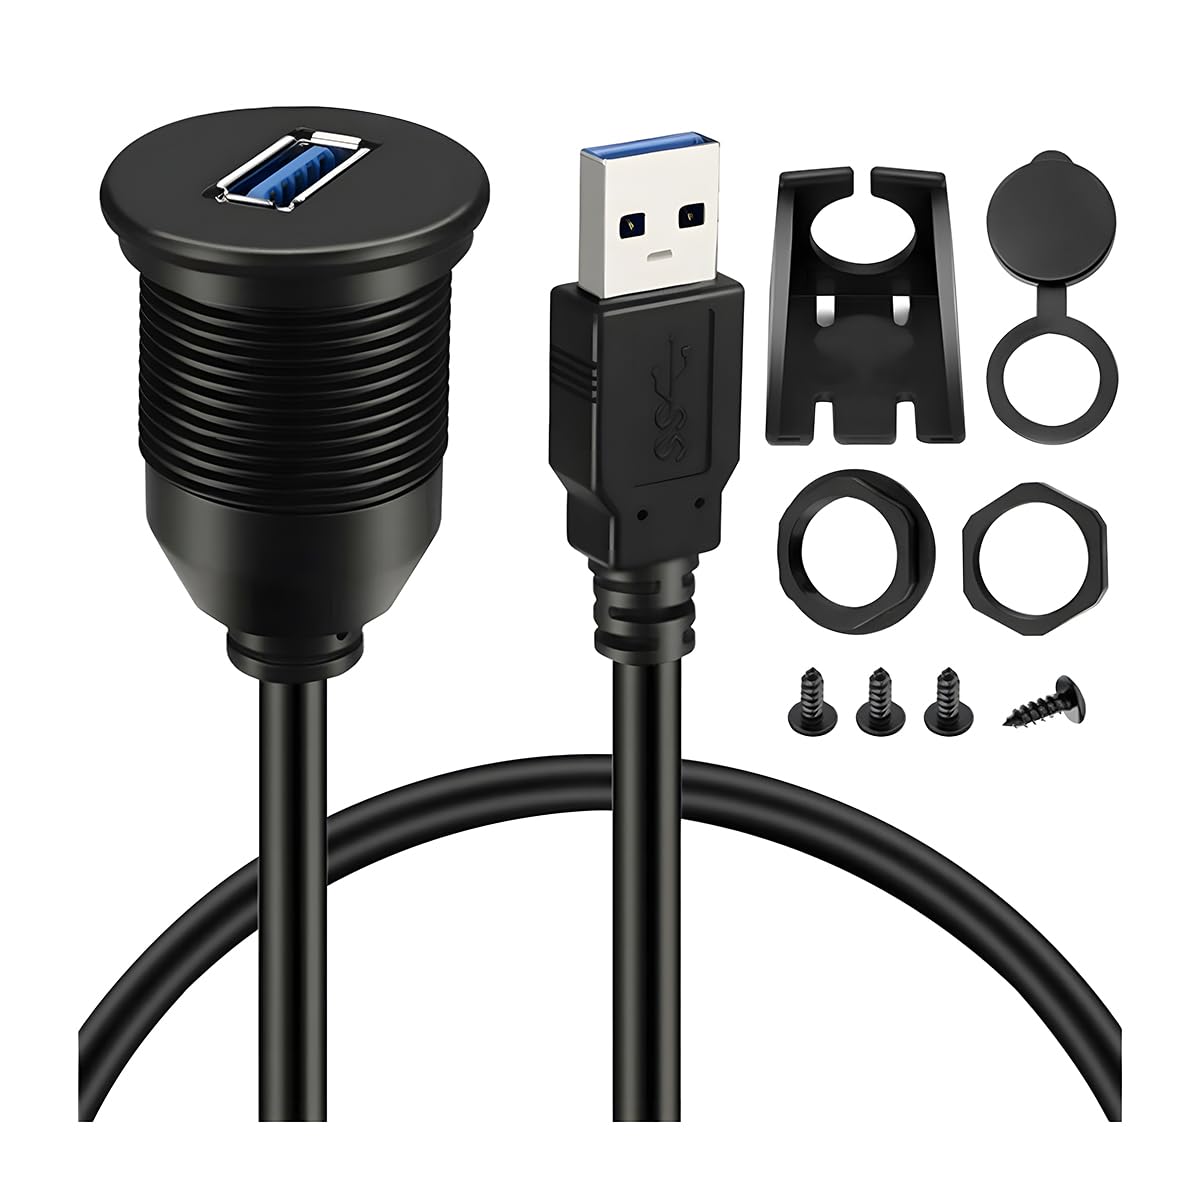 CGEAMDY USB 3.0 Auto Flush Mount Kabel, Verlängerung Dash Panel Flush Mount, Automobil Wasserdicht Cable, für Auto LKW, Boot, Motorrad Dashboard Universal(1m) von CGEAMDY